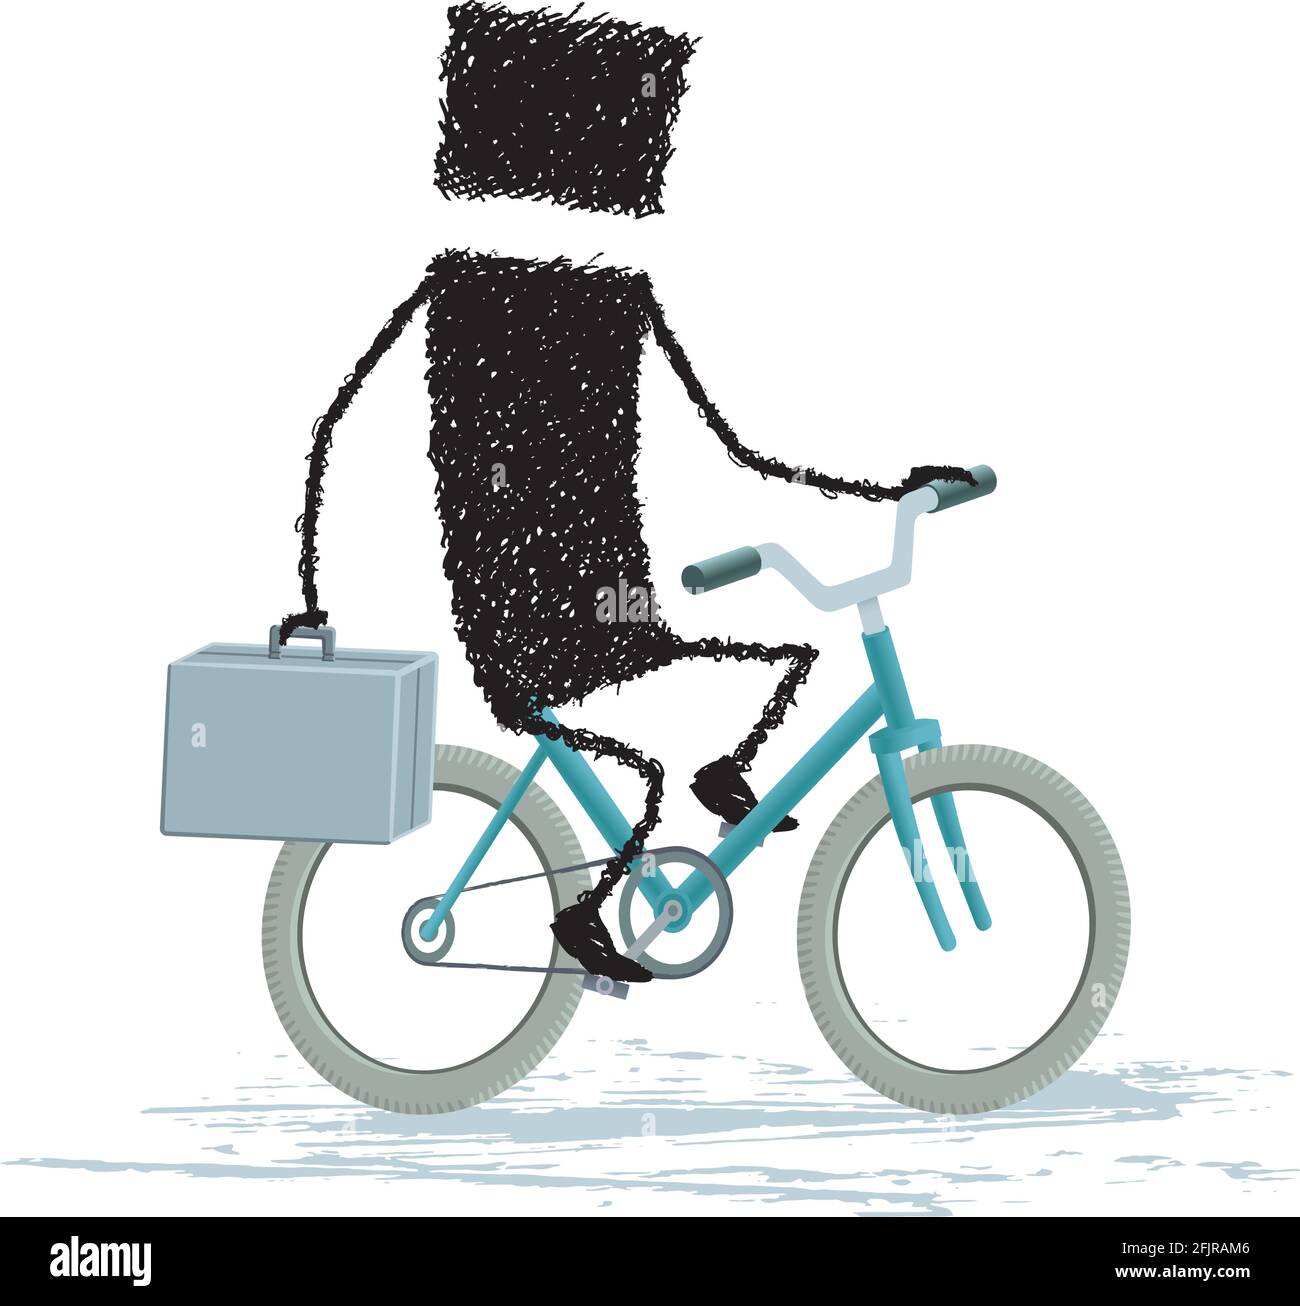 Un bastone che porta in mano una valigetta mentre si guida una bicicletta. Illustrazione Vettoriale